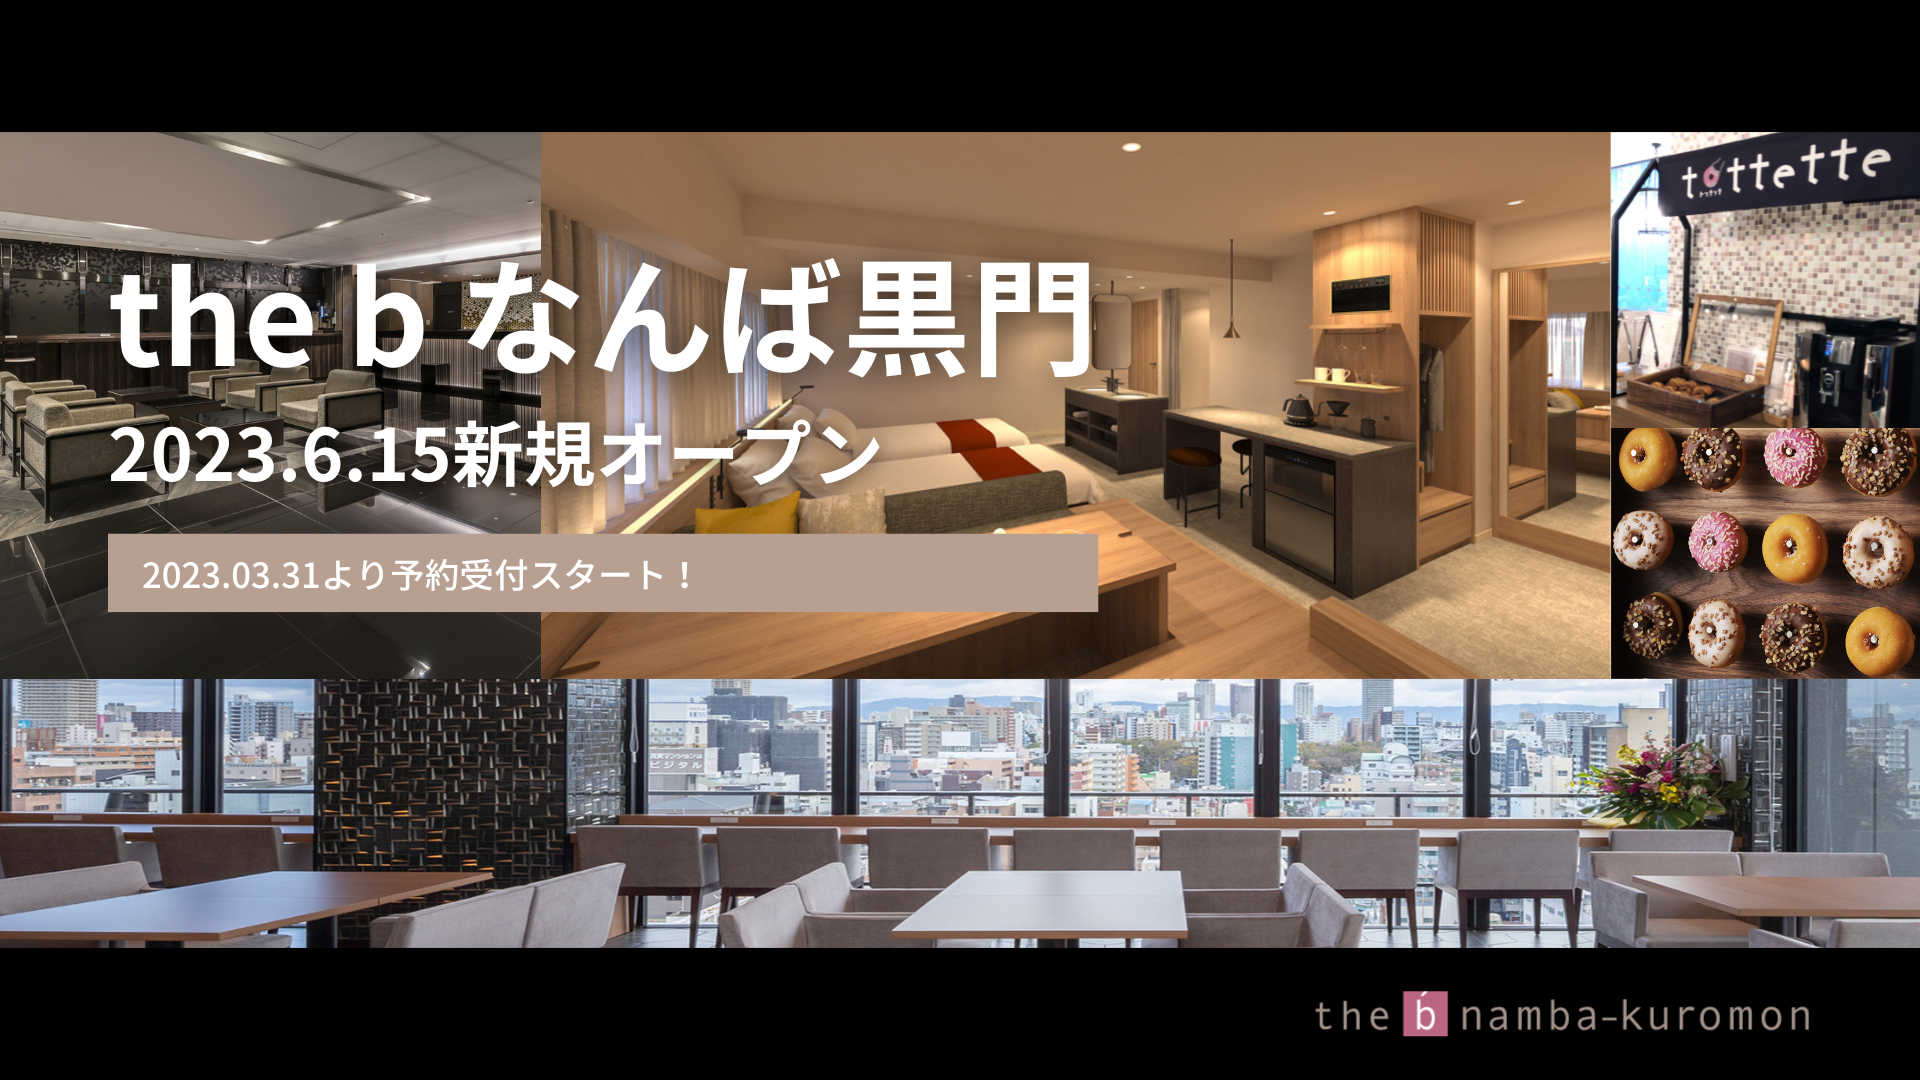 13店舗目の新ホテル「the b なんば黒門」2023年3月31日より予約受付開始